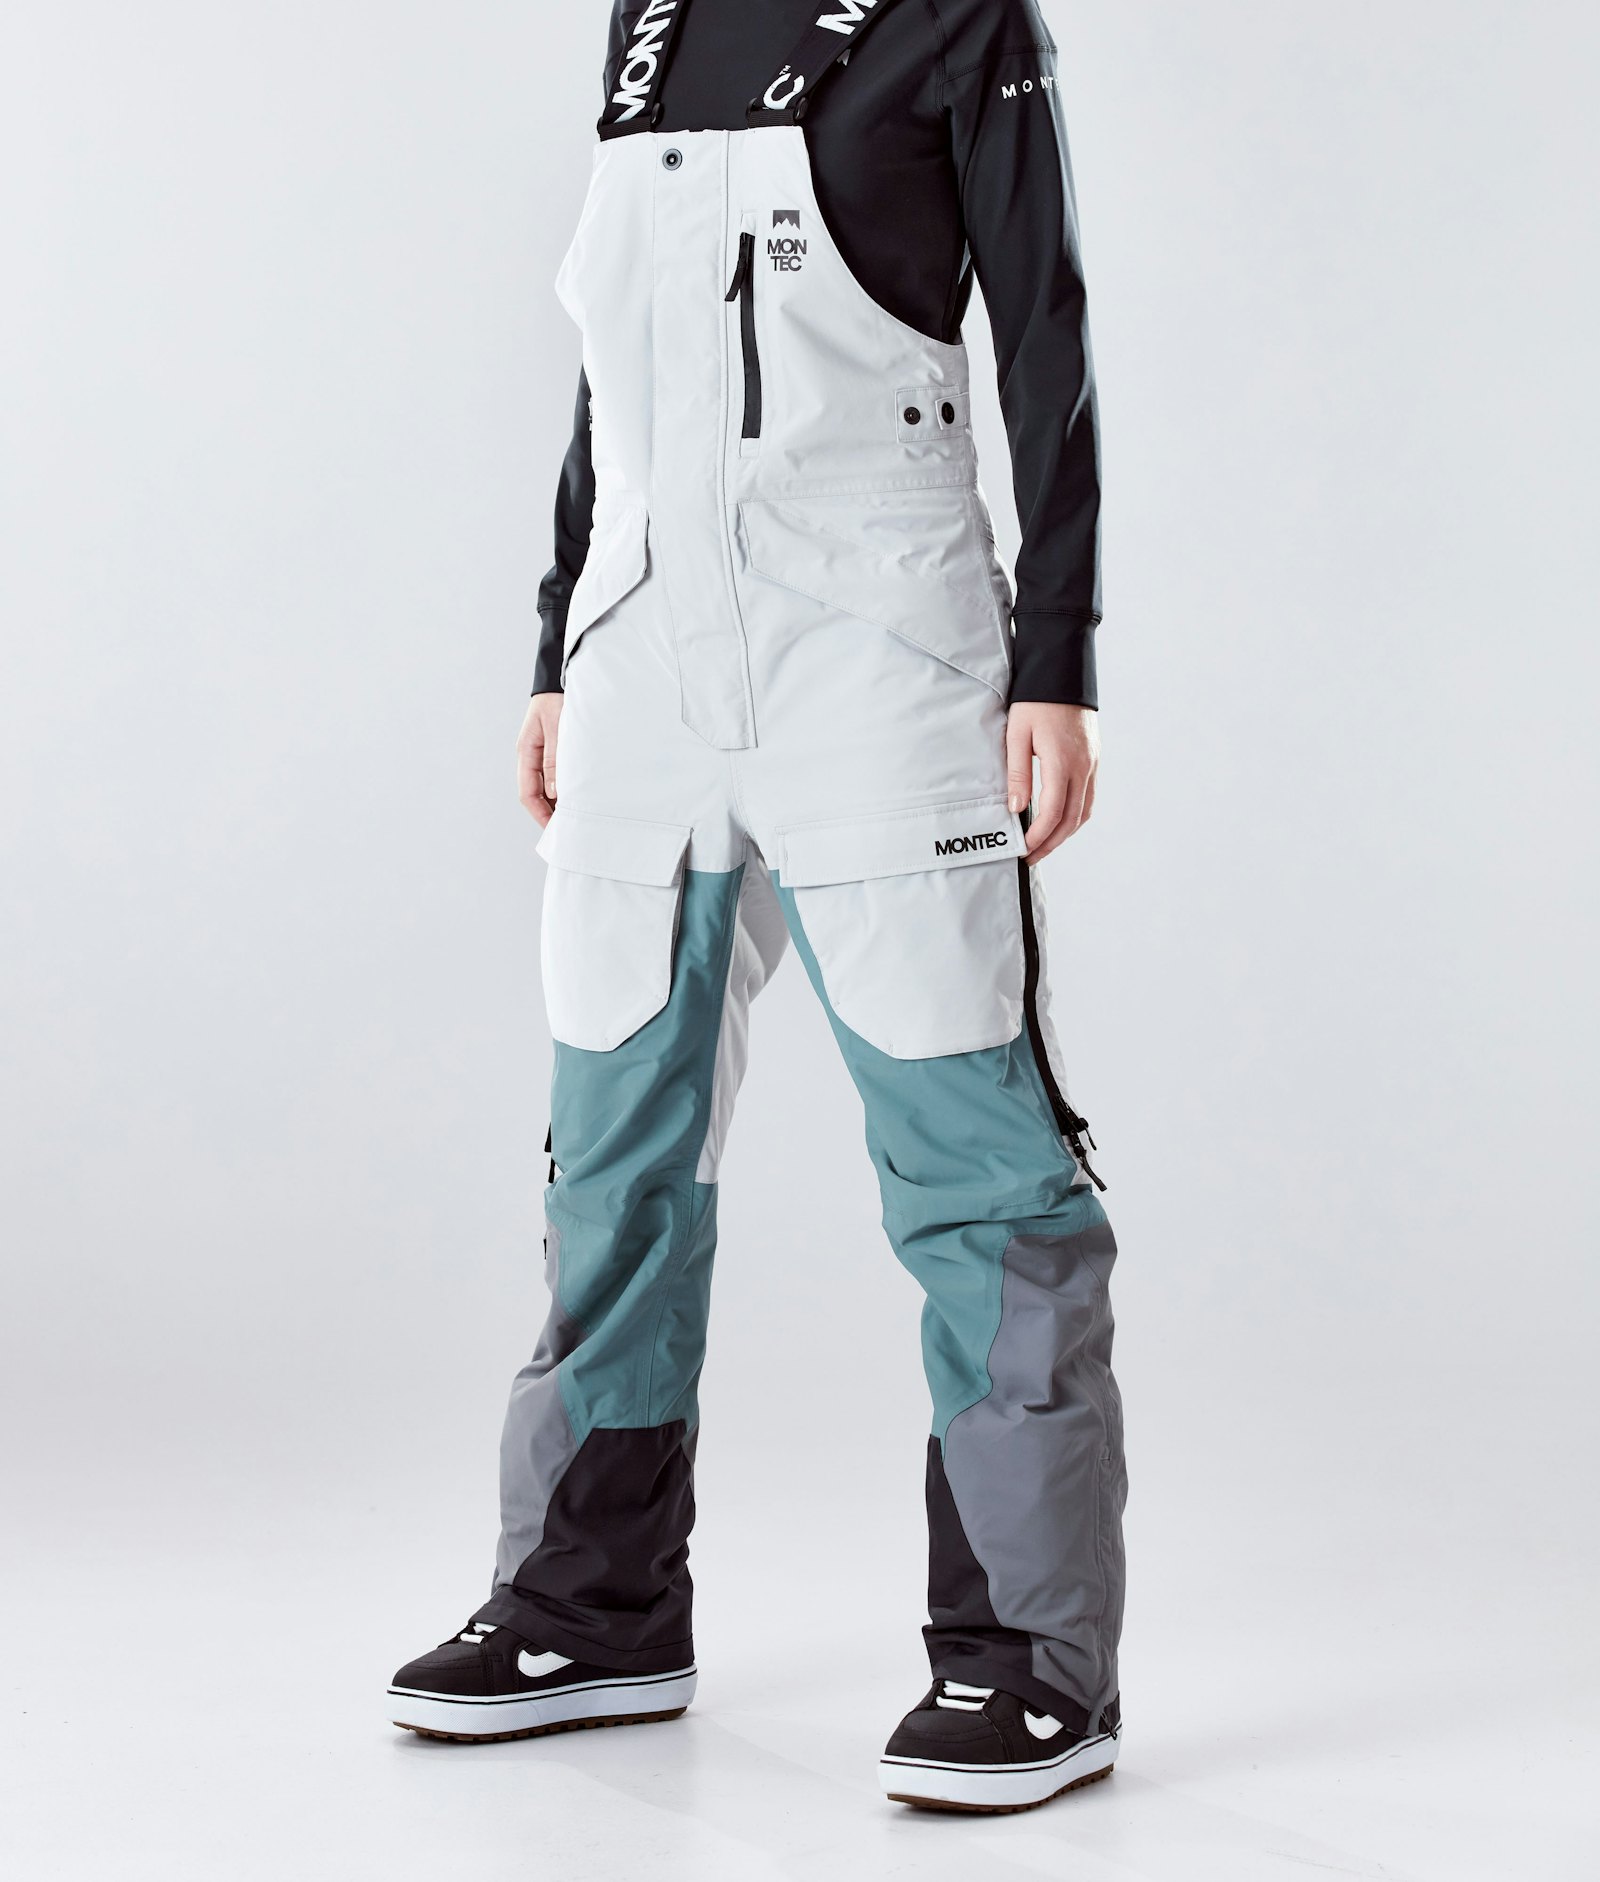 Fawk W 2020 Snowboard Pants Women Light Grey/Atlantic/Light Pearl